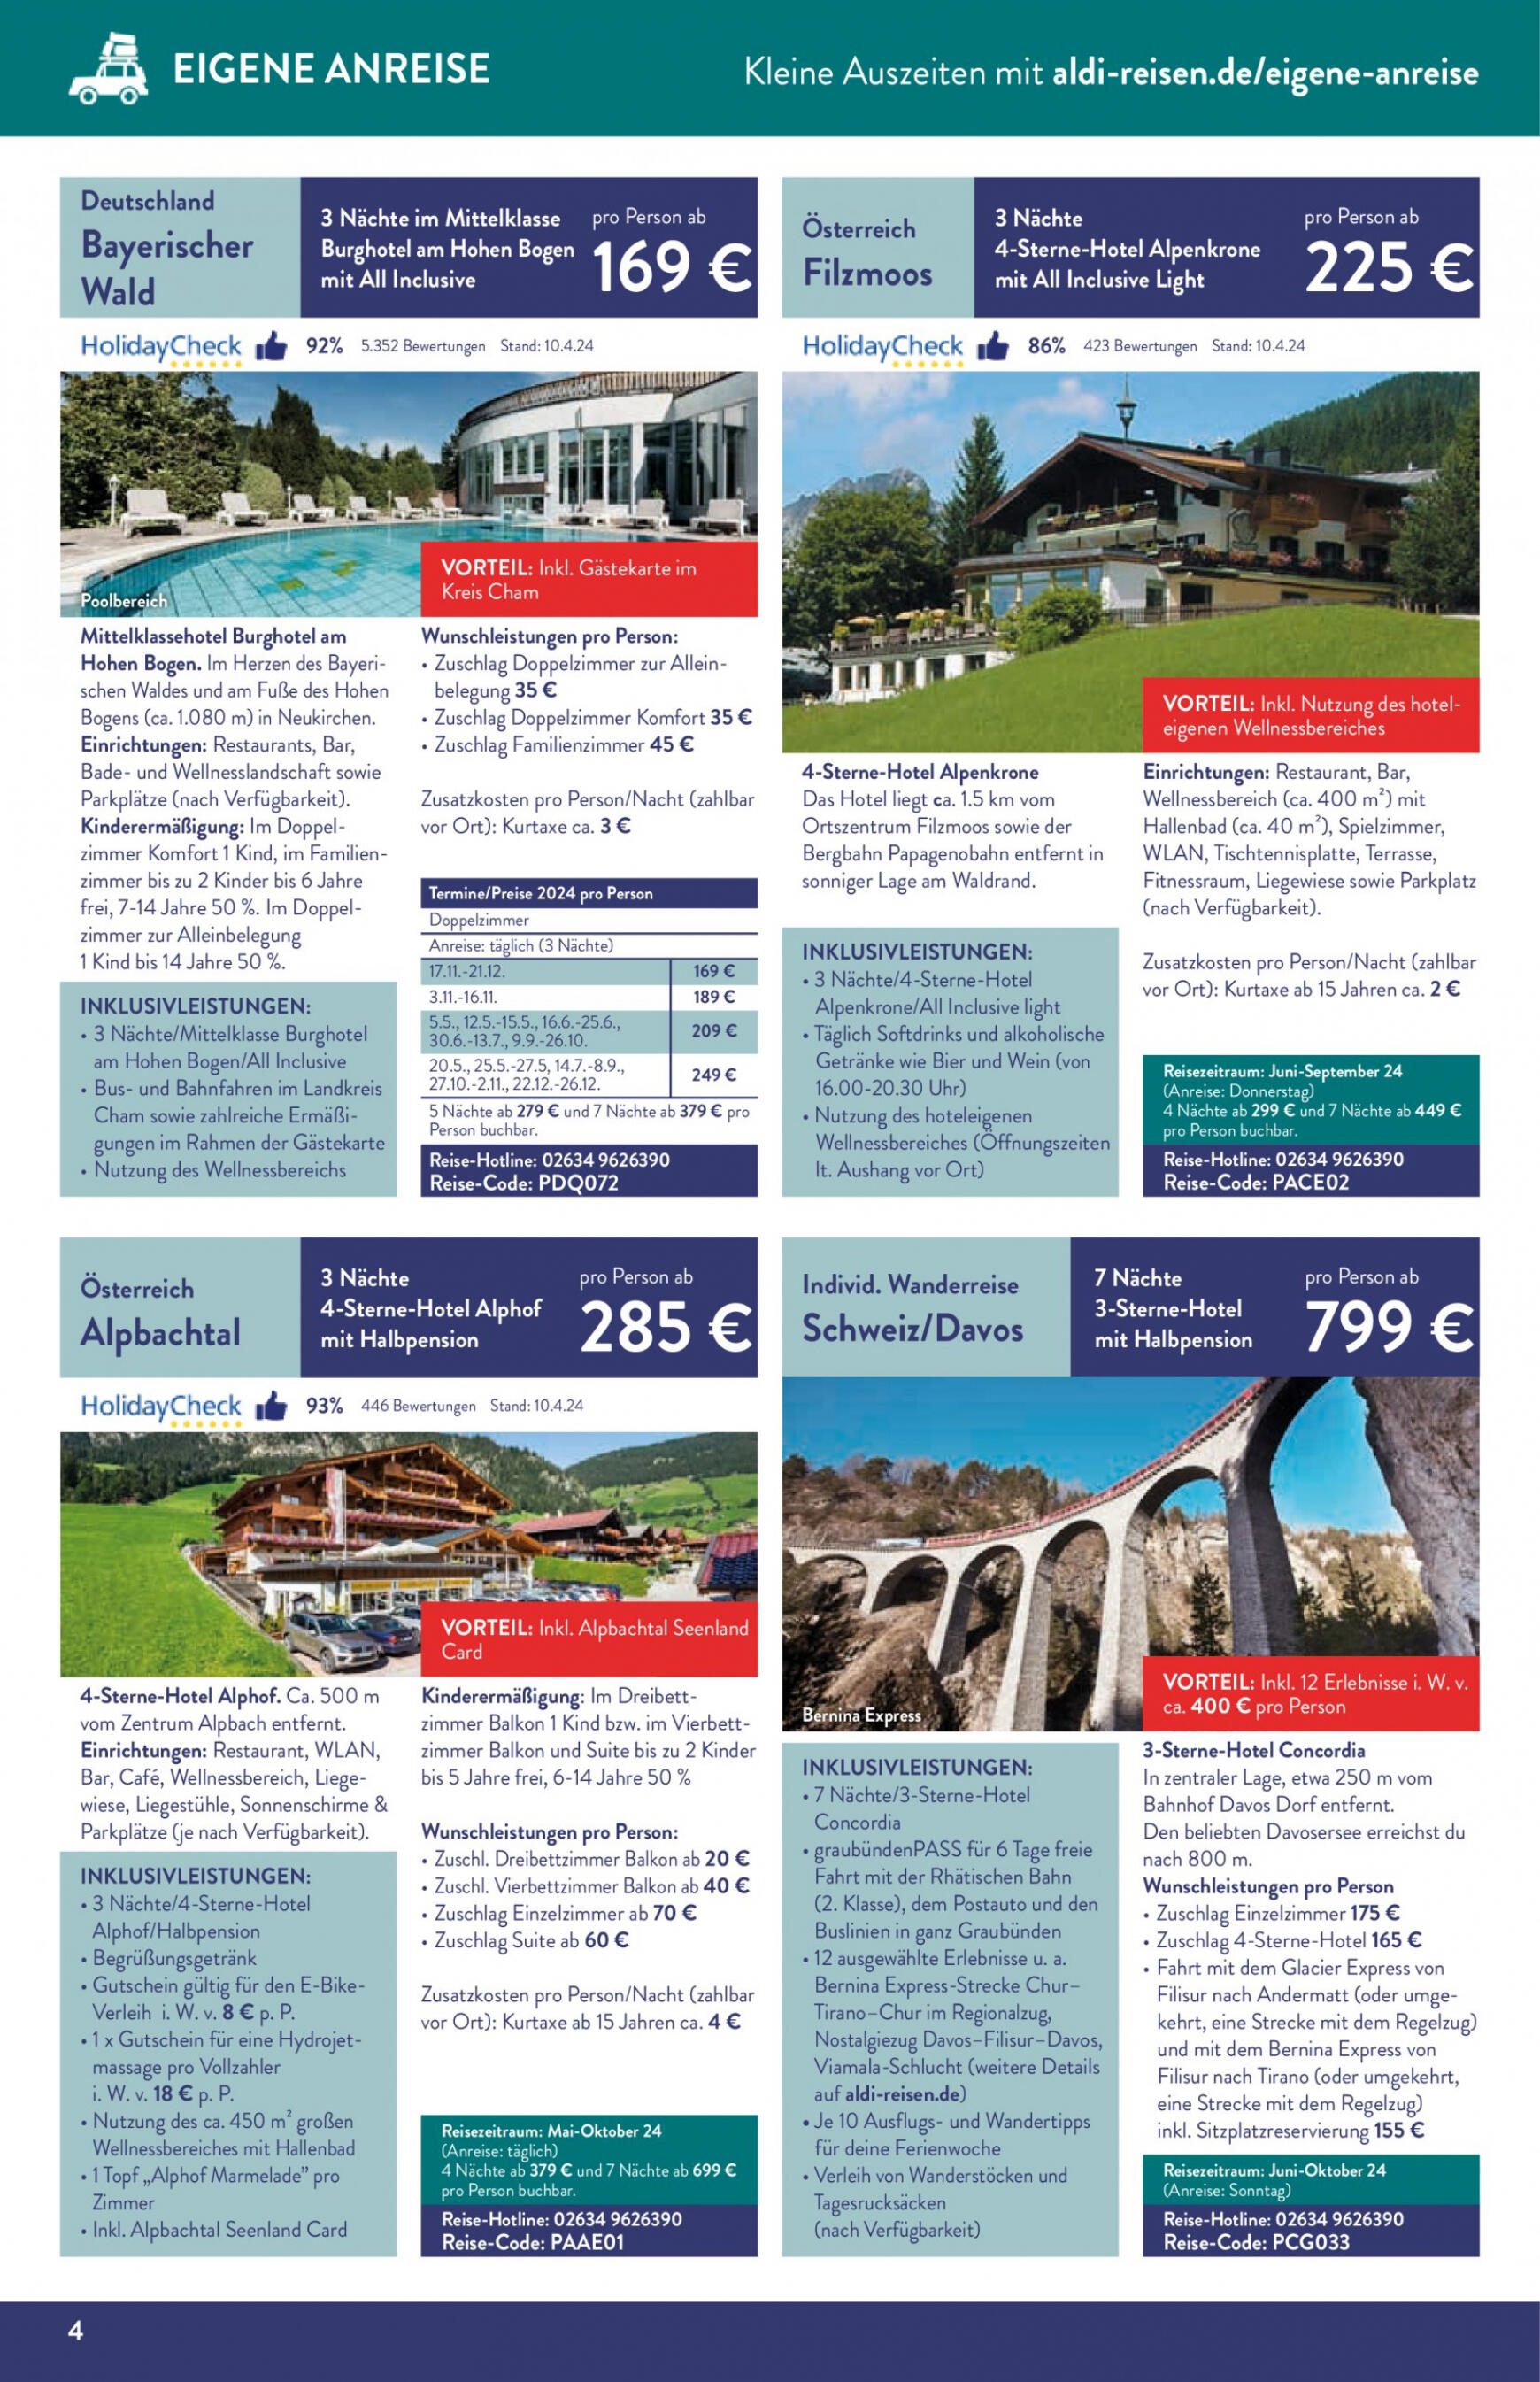 aldi - Flyer ALDI SÜD - Reisemagazin aktuell 02.05. - 31.05. - page: 4